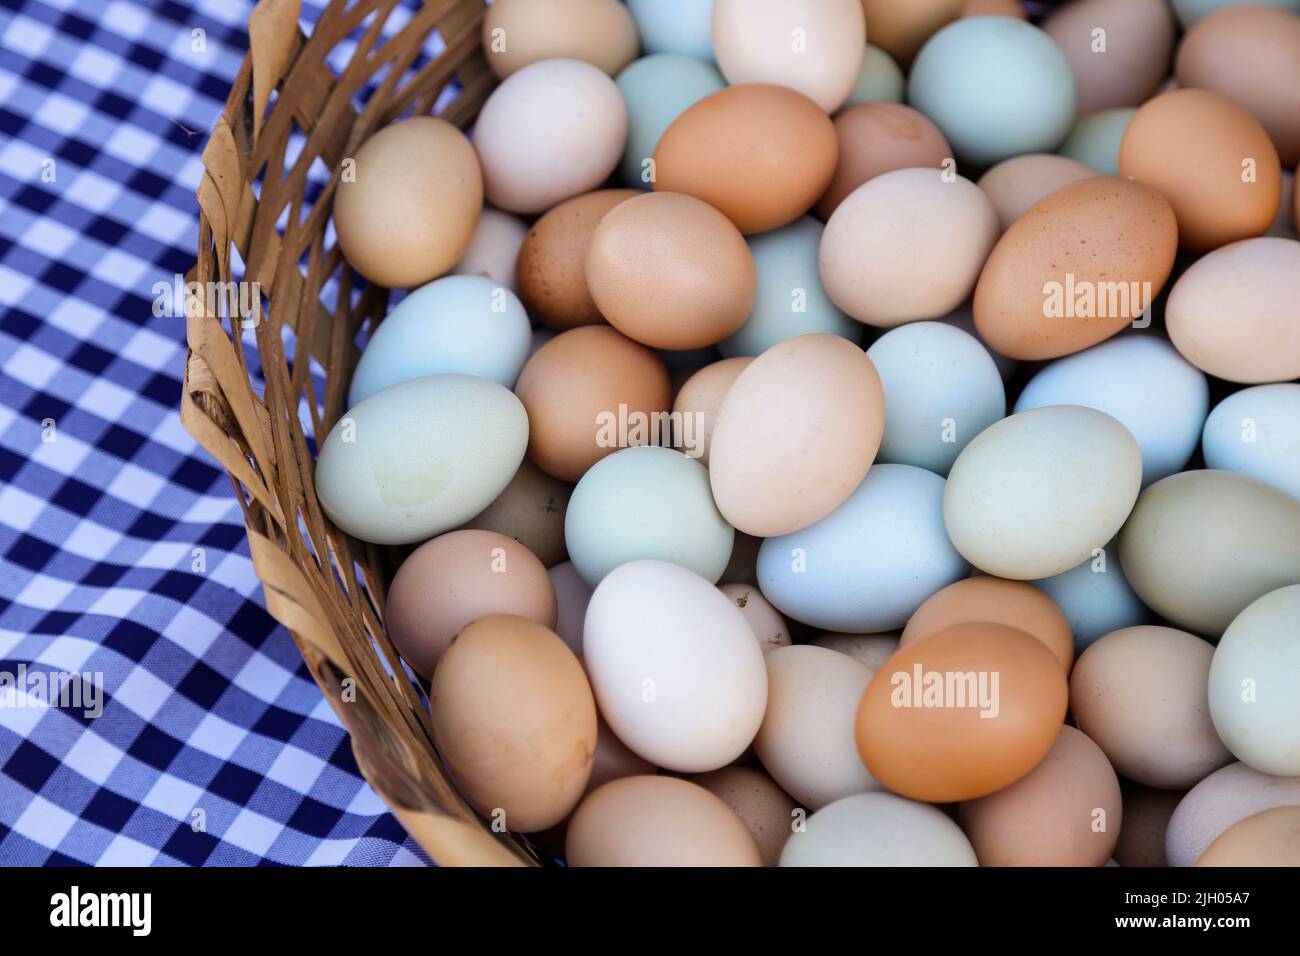 huevos de colores variados agrupados en una cesta tradicional Foto de stock